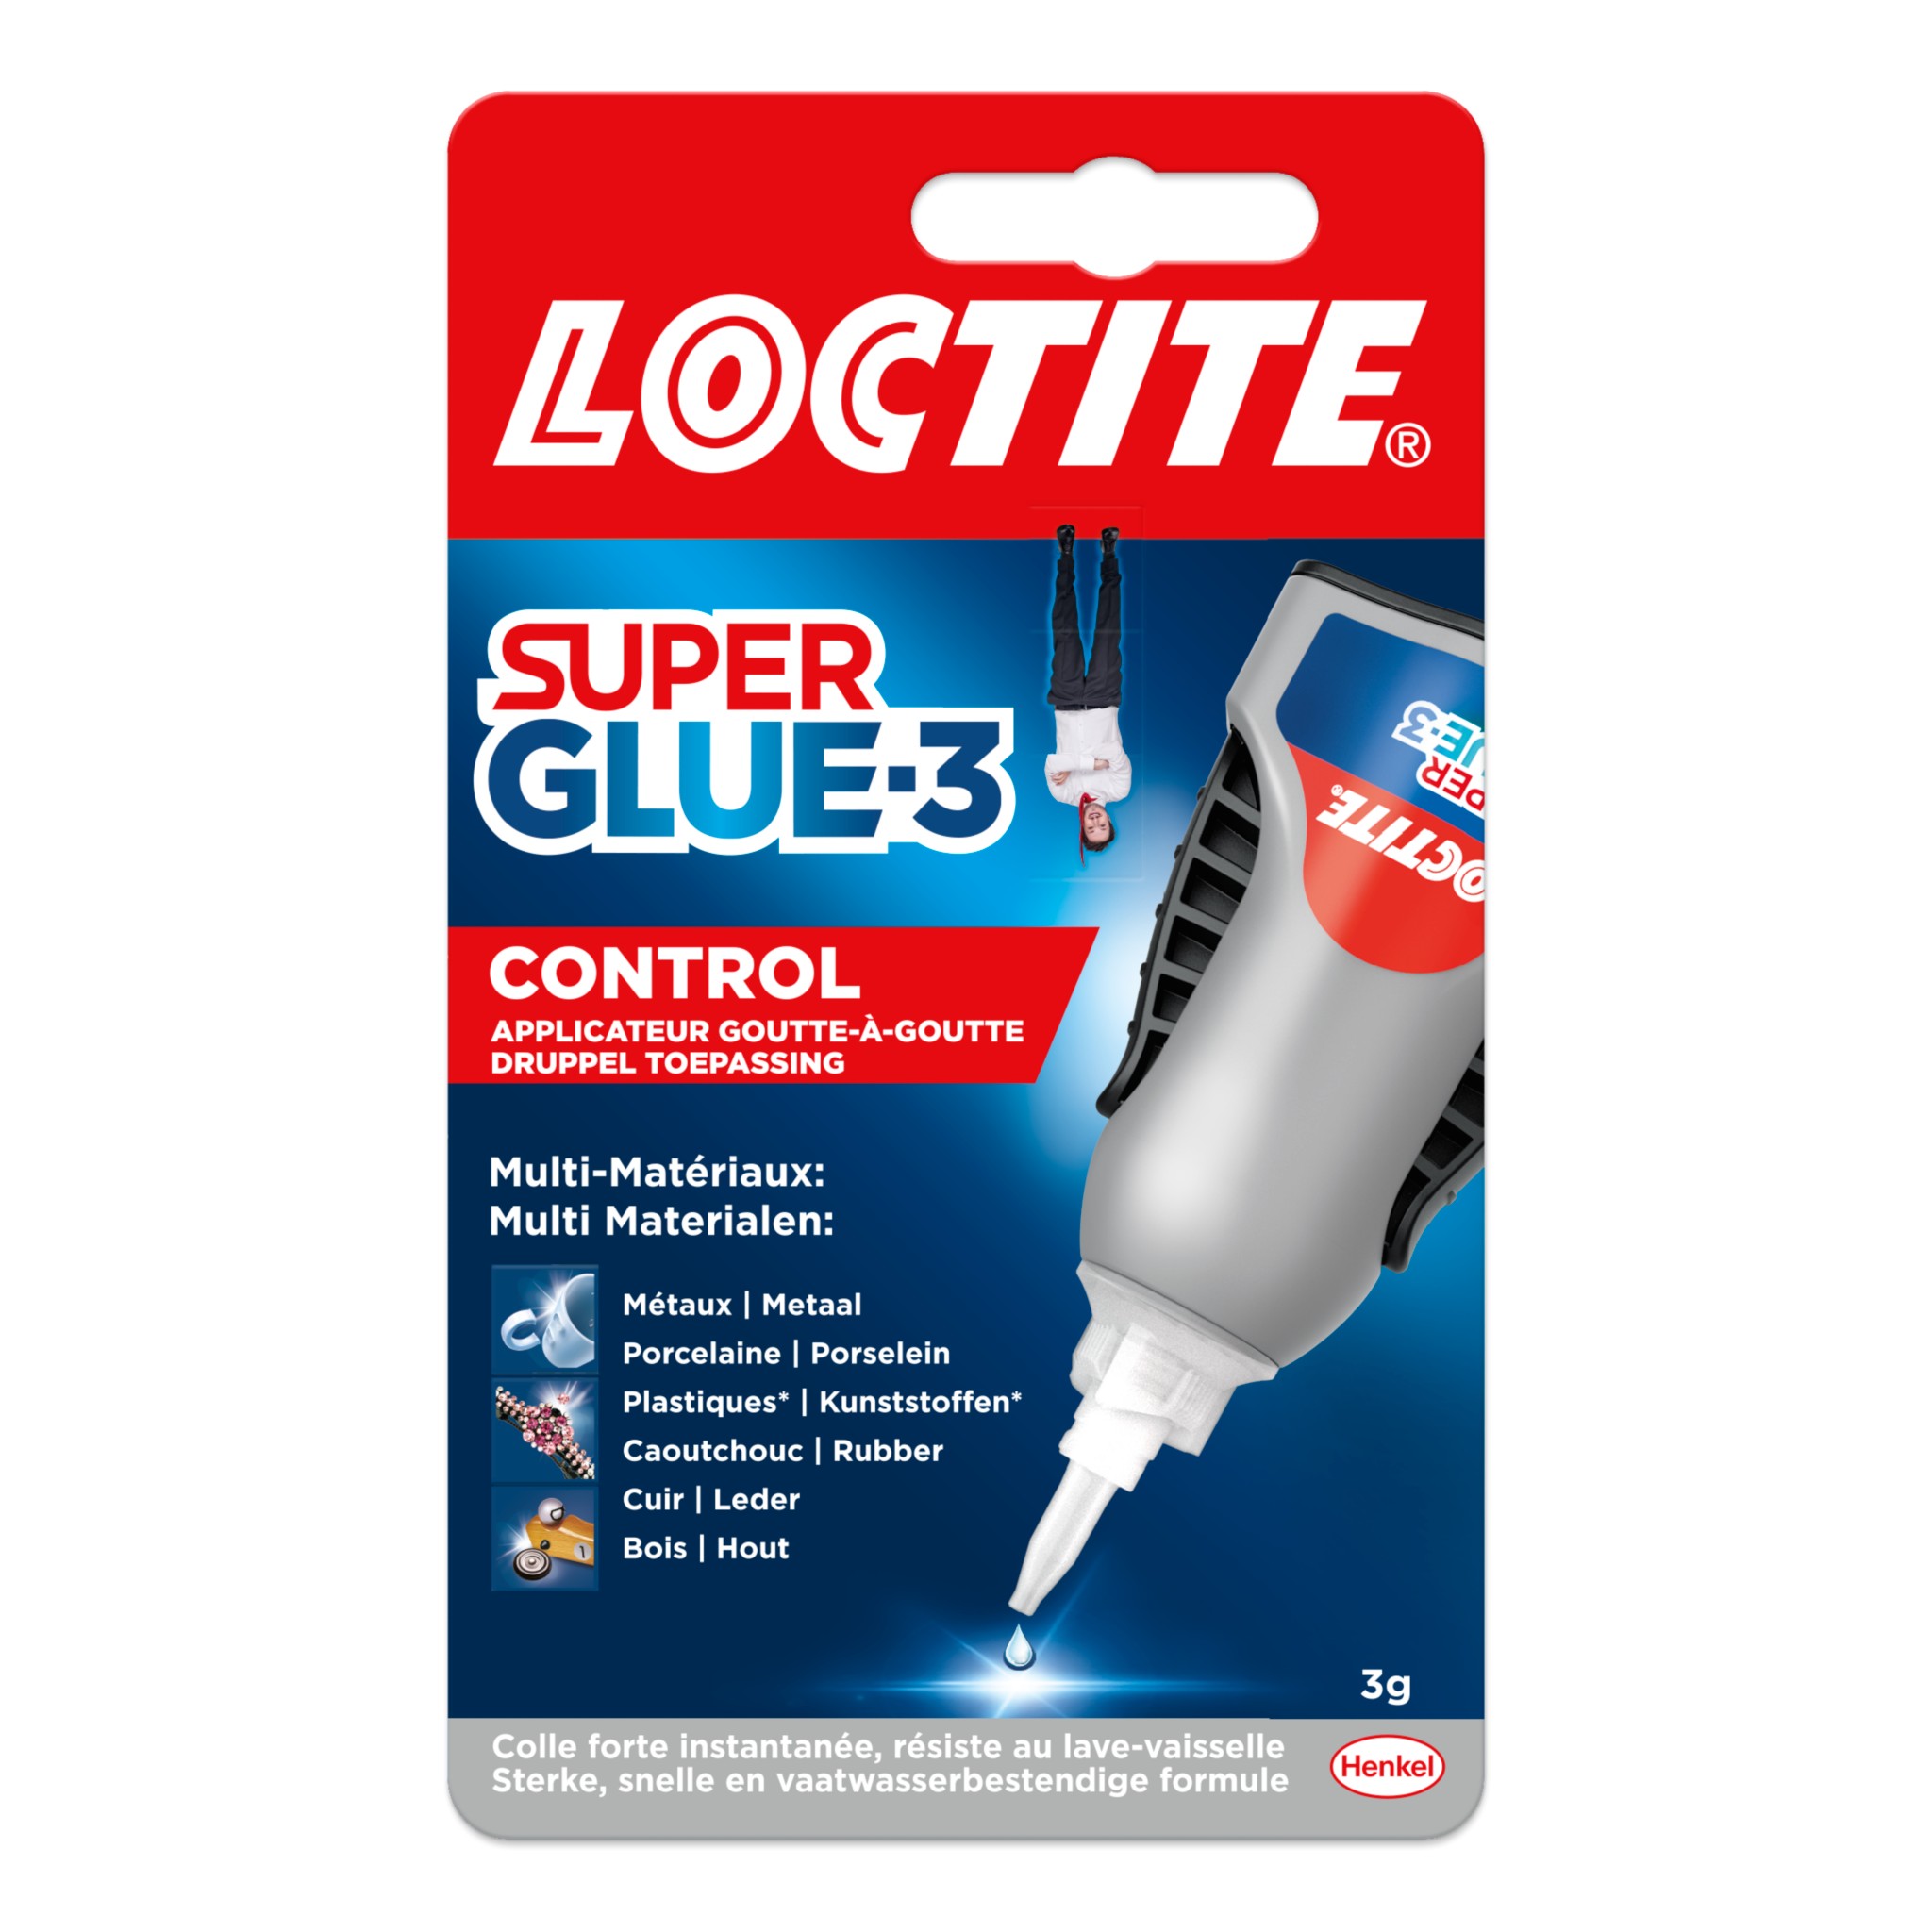 Colle super glue 3 Loctite E 401 5g - Lubrifiant sur La Bécanerie